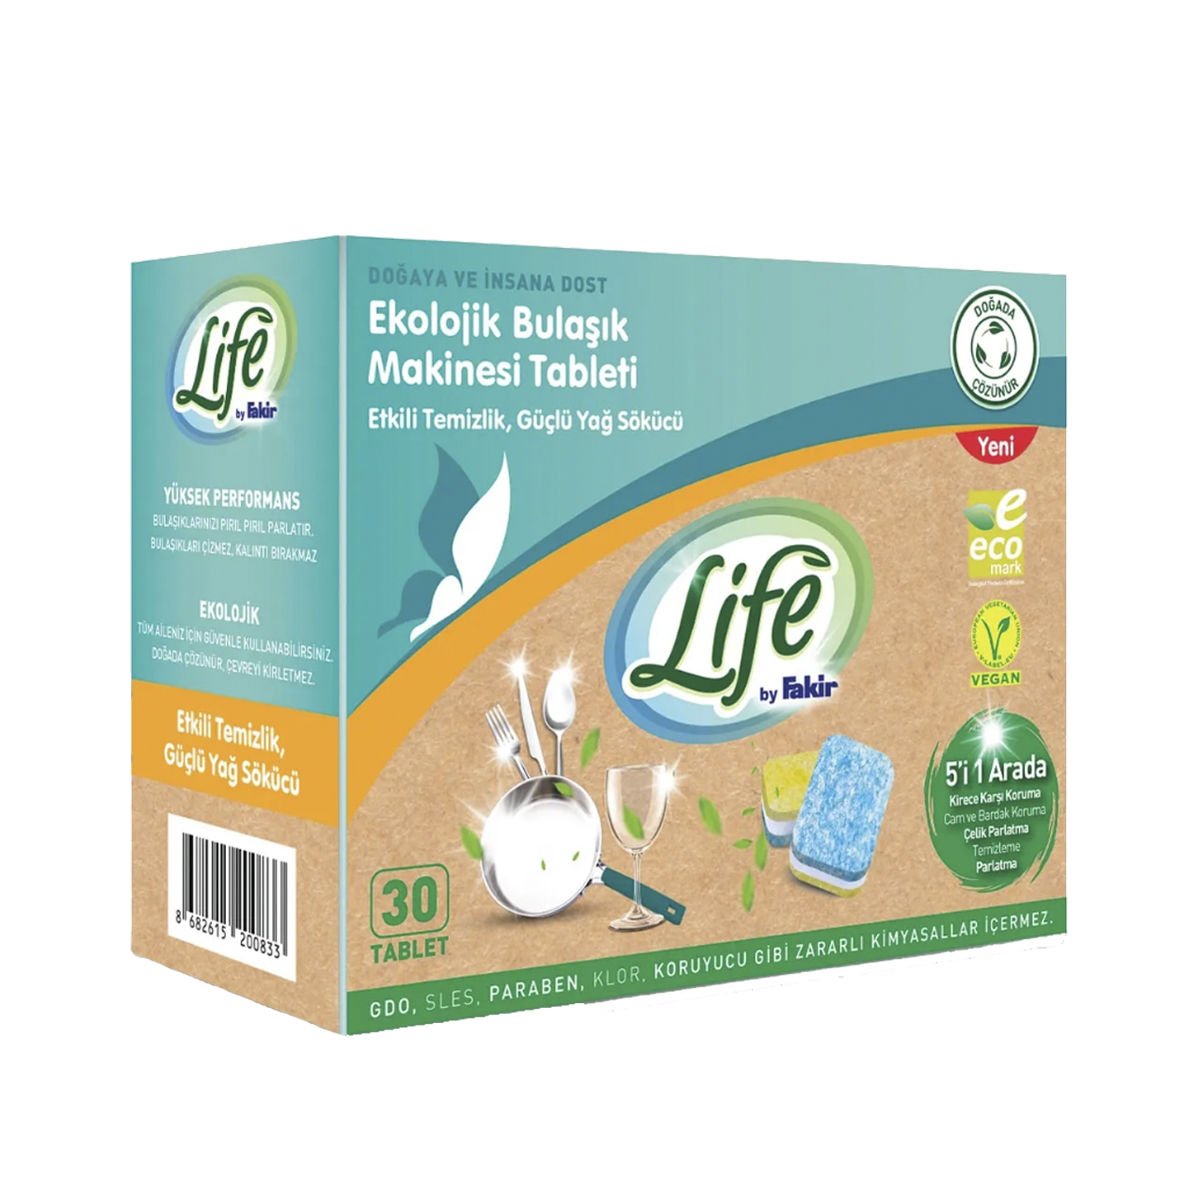 Life By Fakir Ekolojik Bulaşık Makinesi Tableti 30 Tablet